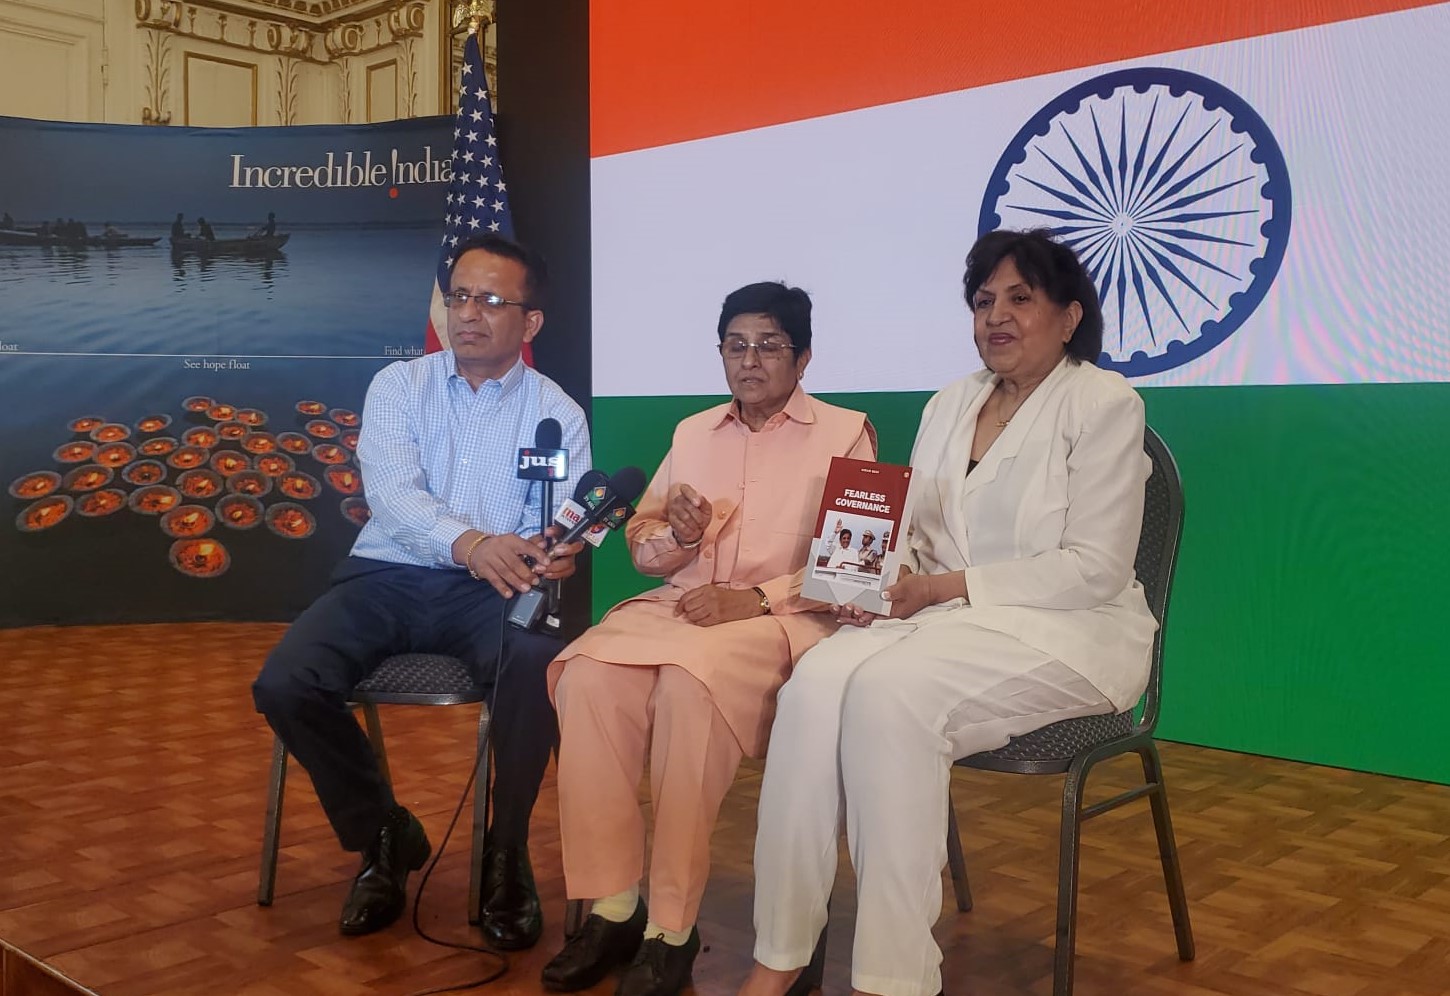 Dr Kiran Bedi presents her book to Indian Consul General Randhir Jaiswal